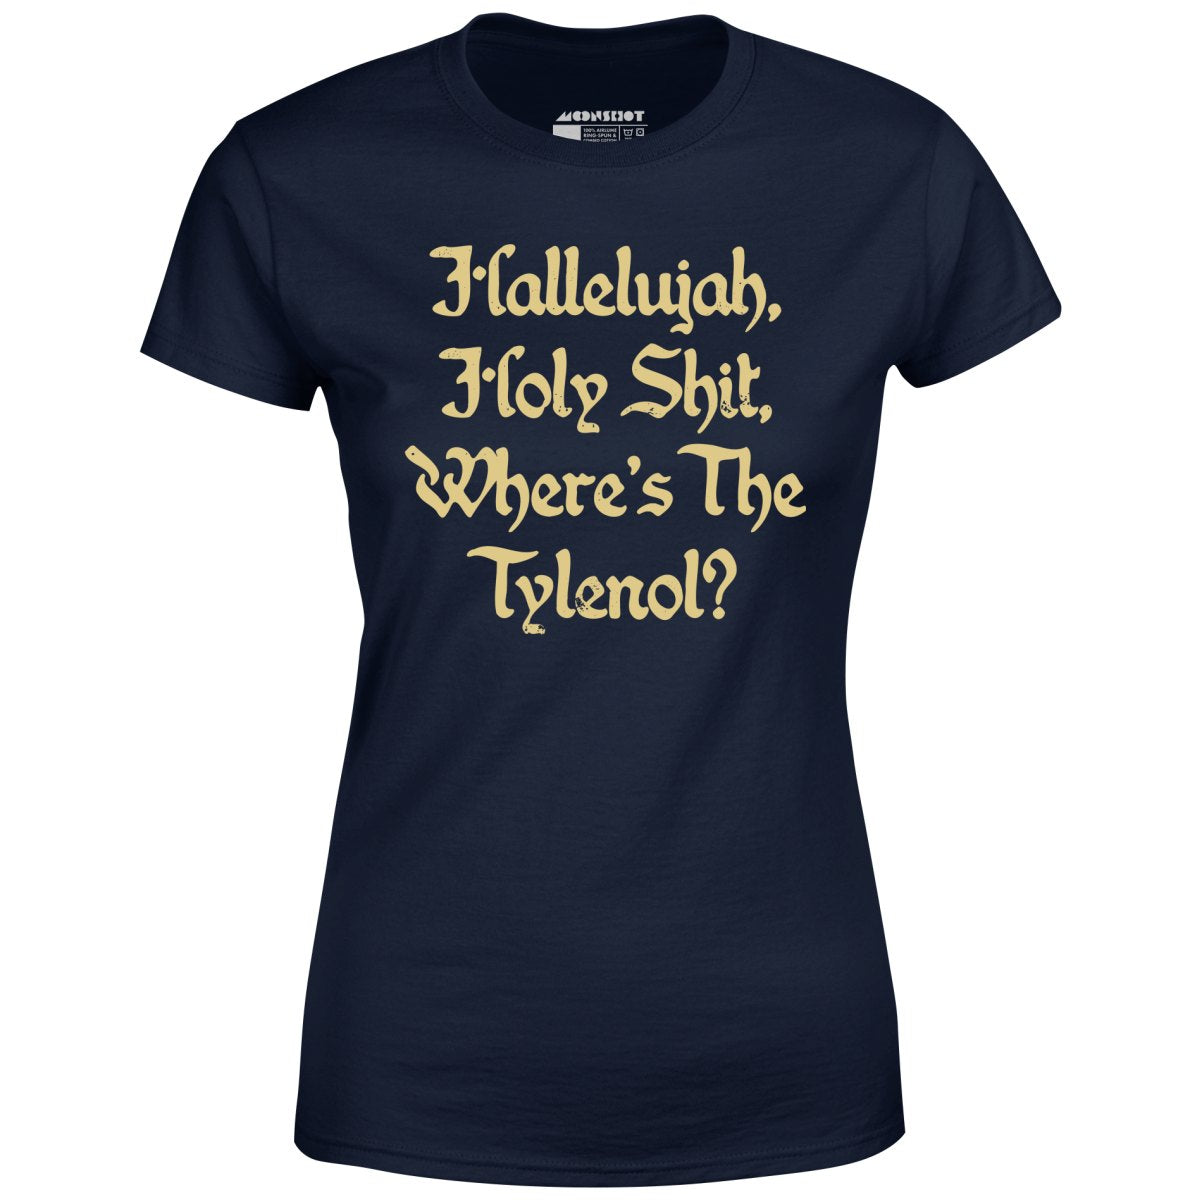 Where's the Tylenol? - Women's T-Shirt